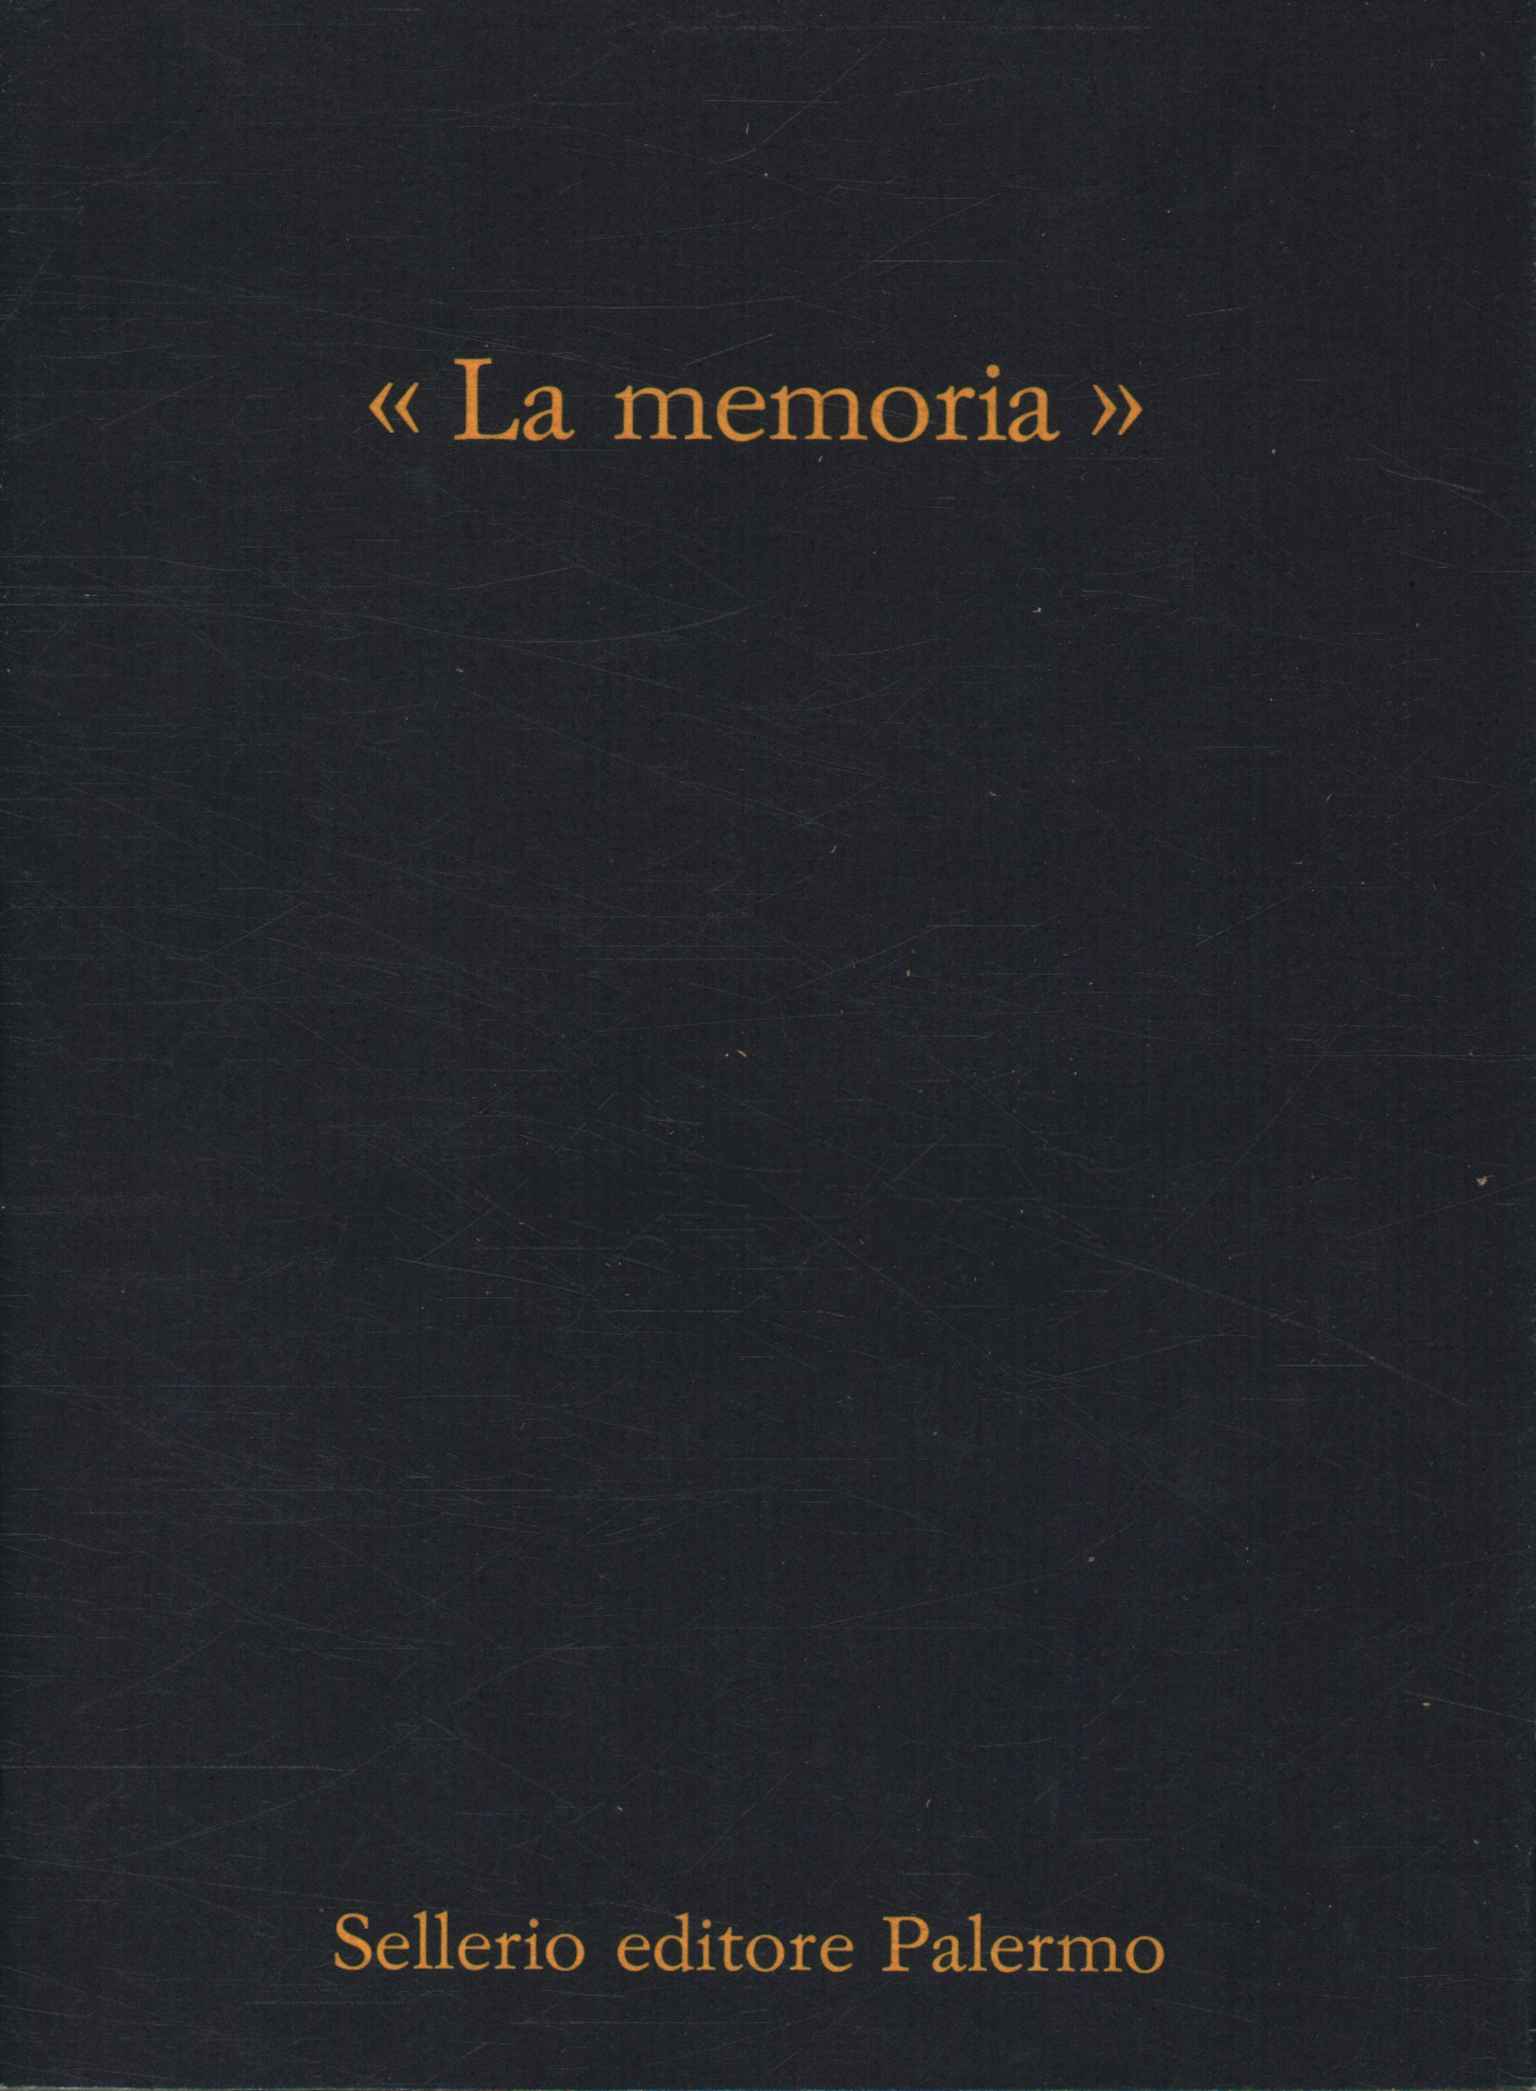 Memory (1979-1989), Memory 1979-1989